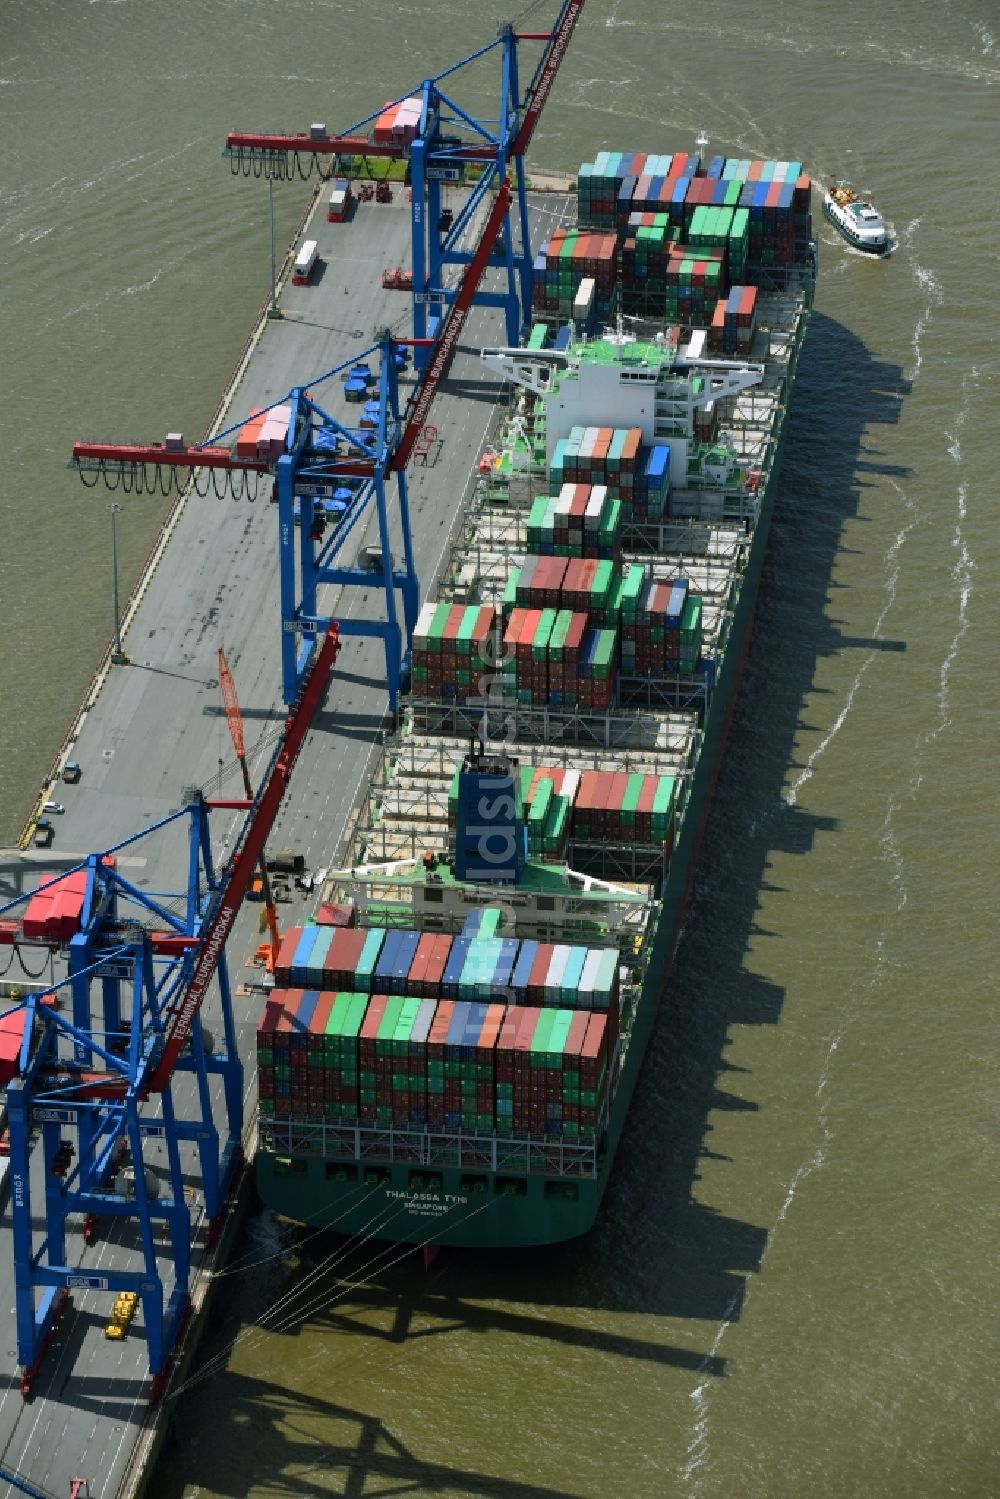 Luftaufnahme Hamburg - HHLA Logistics Container Terminal Burchhardkai am Hamburger Hafen / Waltershofer Hafen in Hamburg Containerschiff MOL Triumph